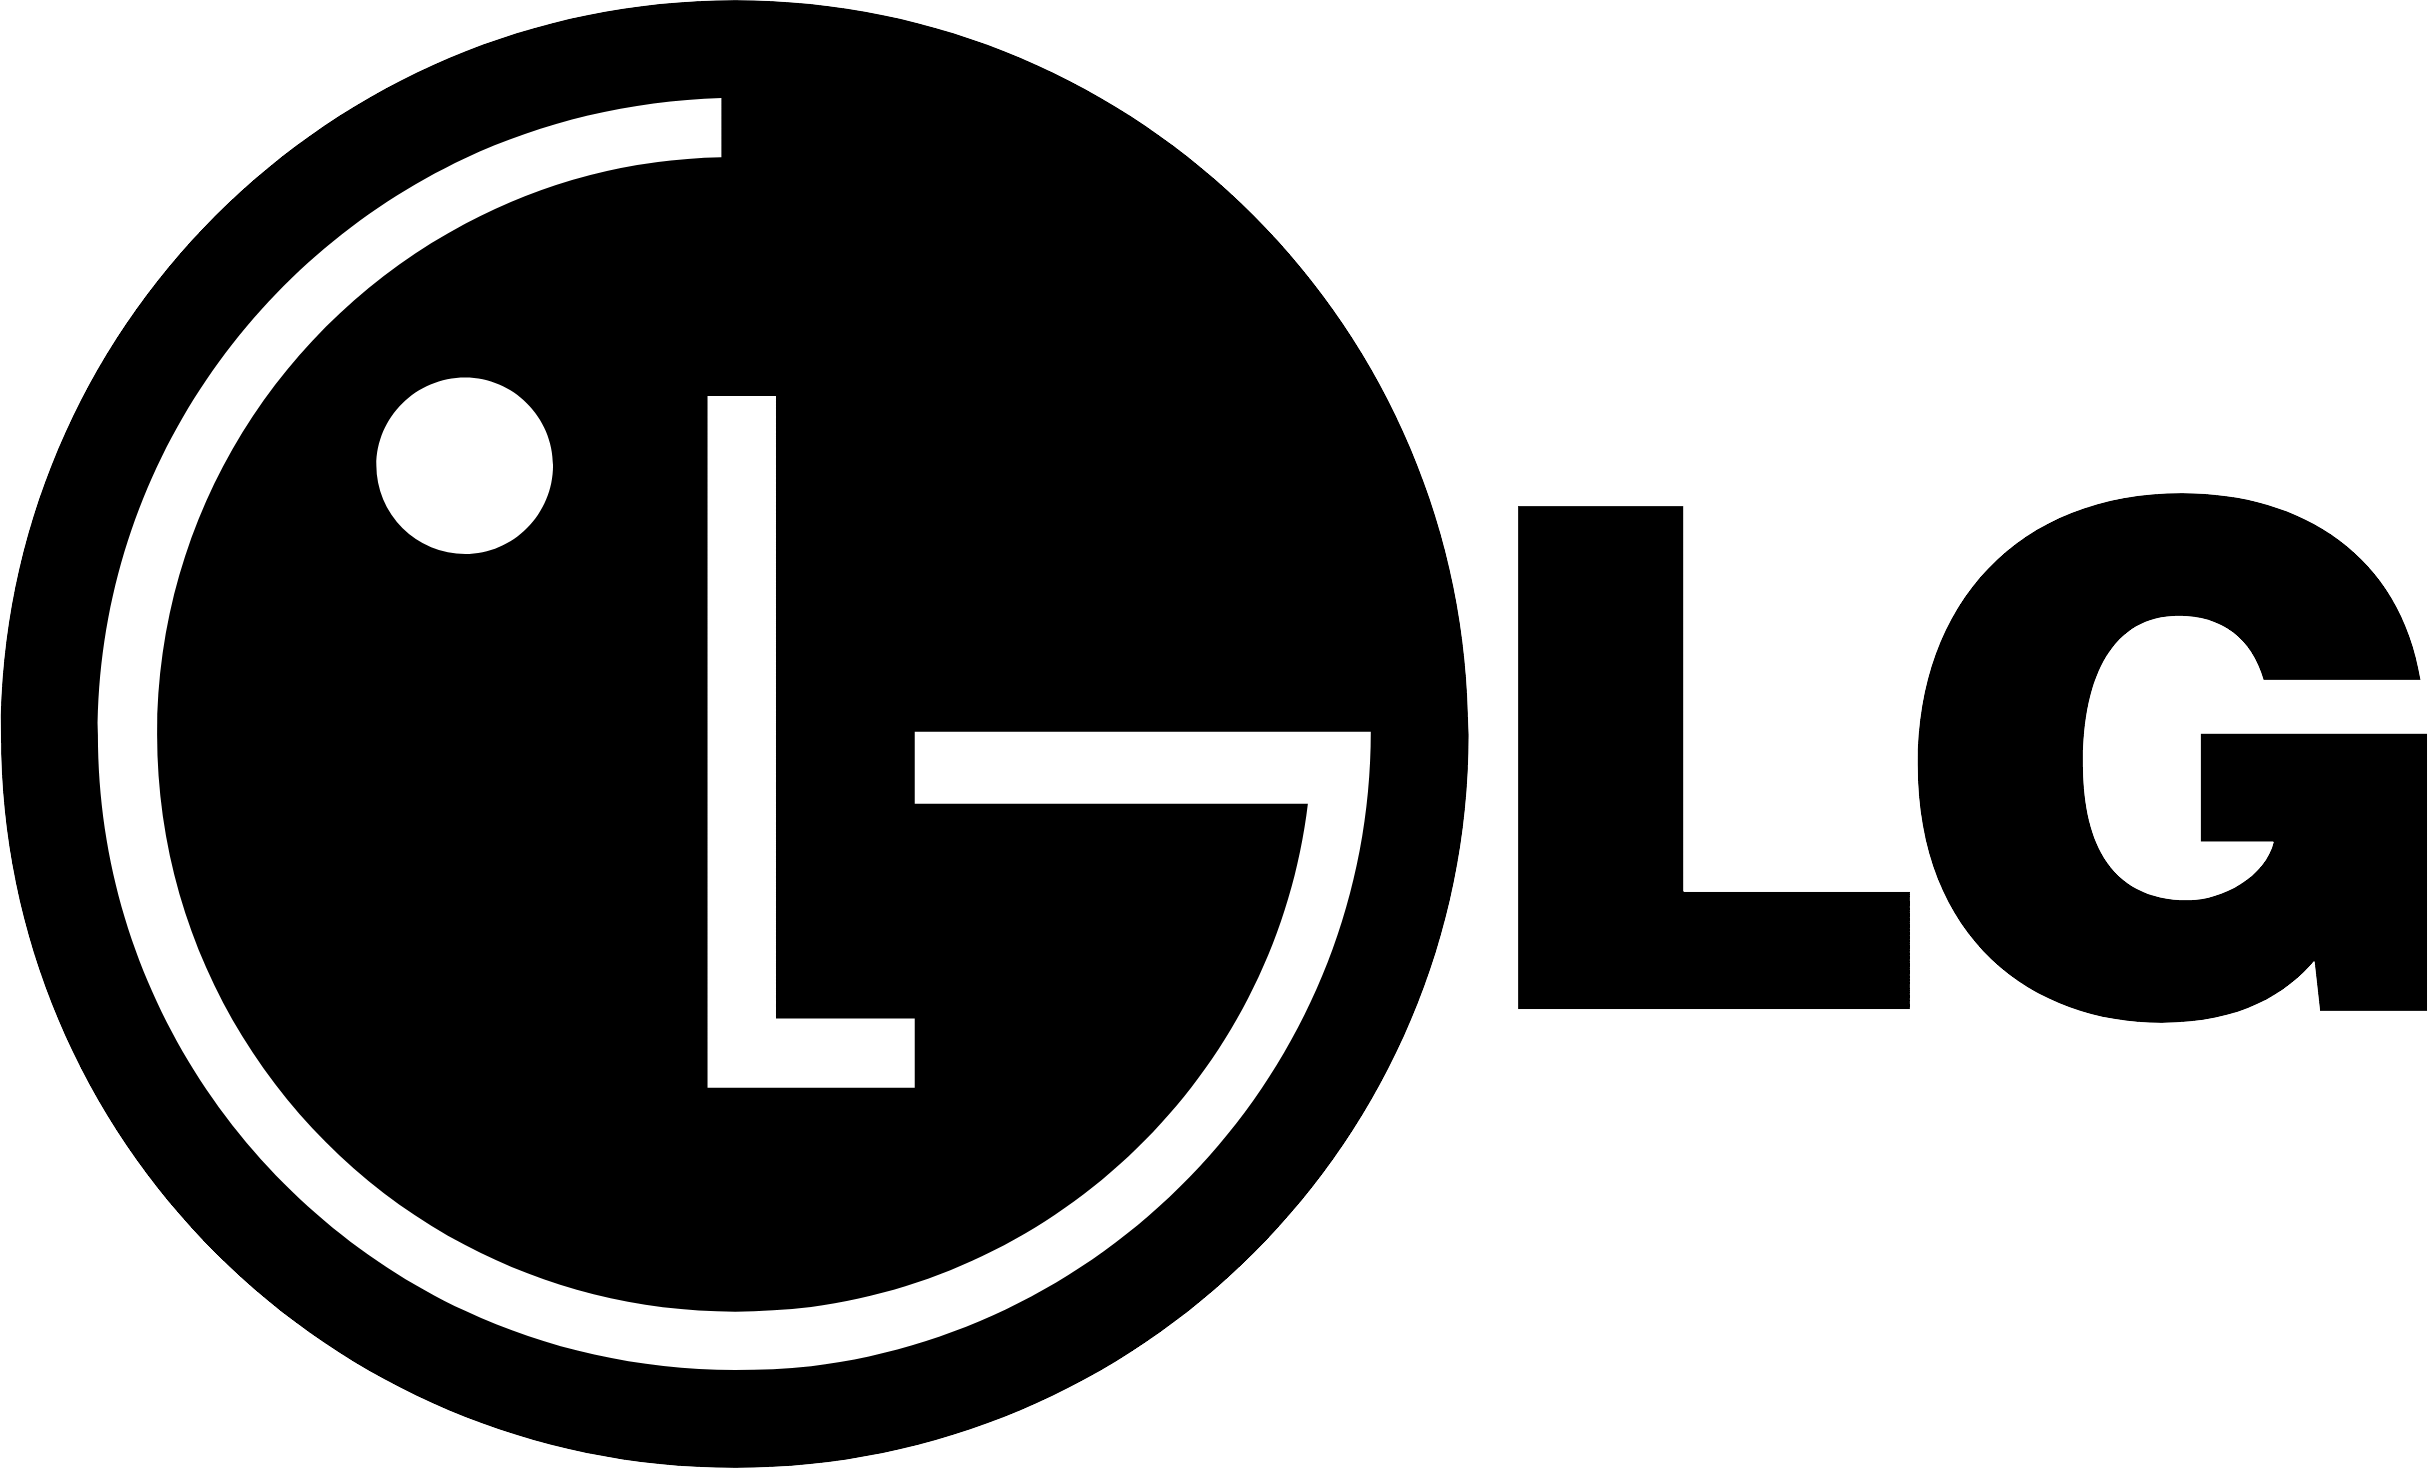 LG Logo - LG logo PNG image free download